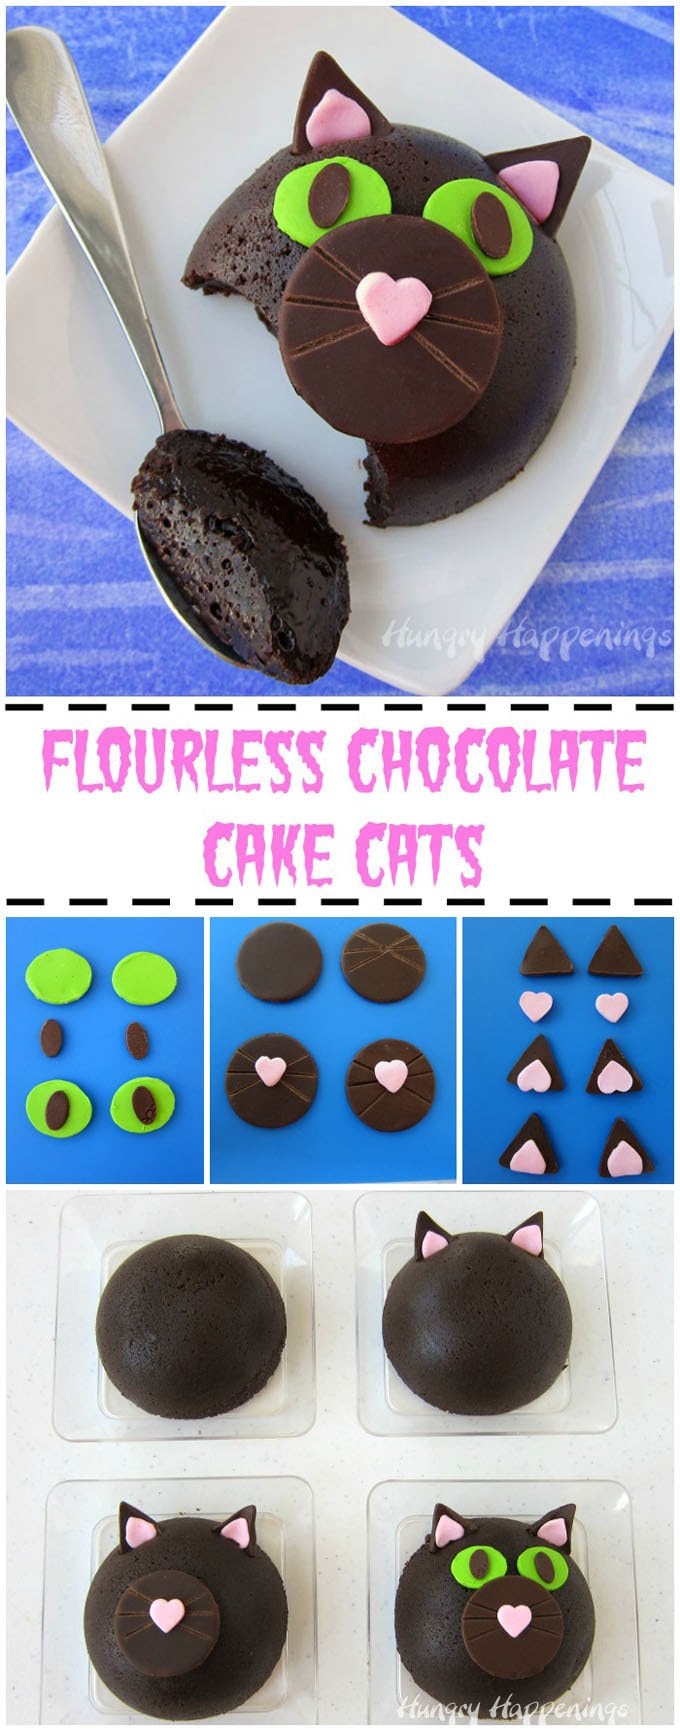 decorating chocolate cat cakes